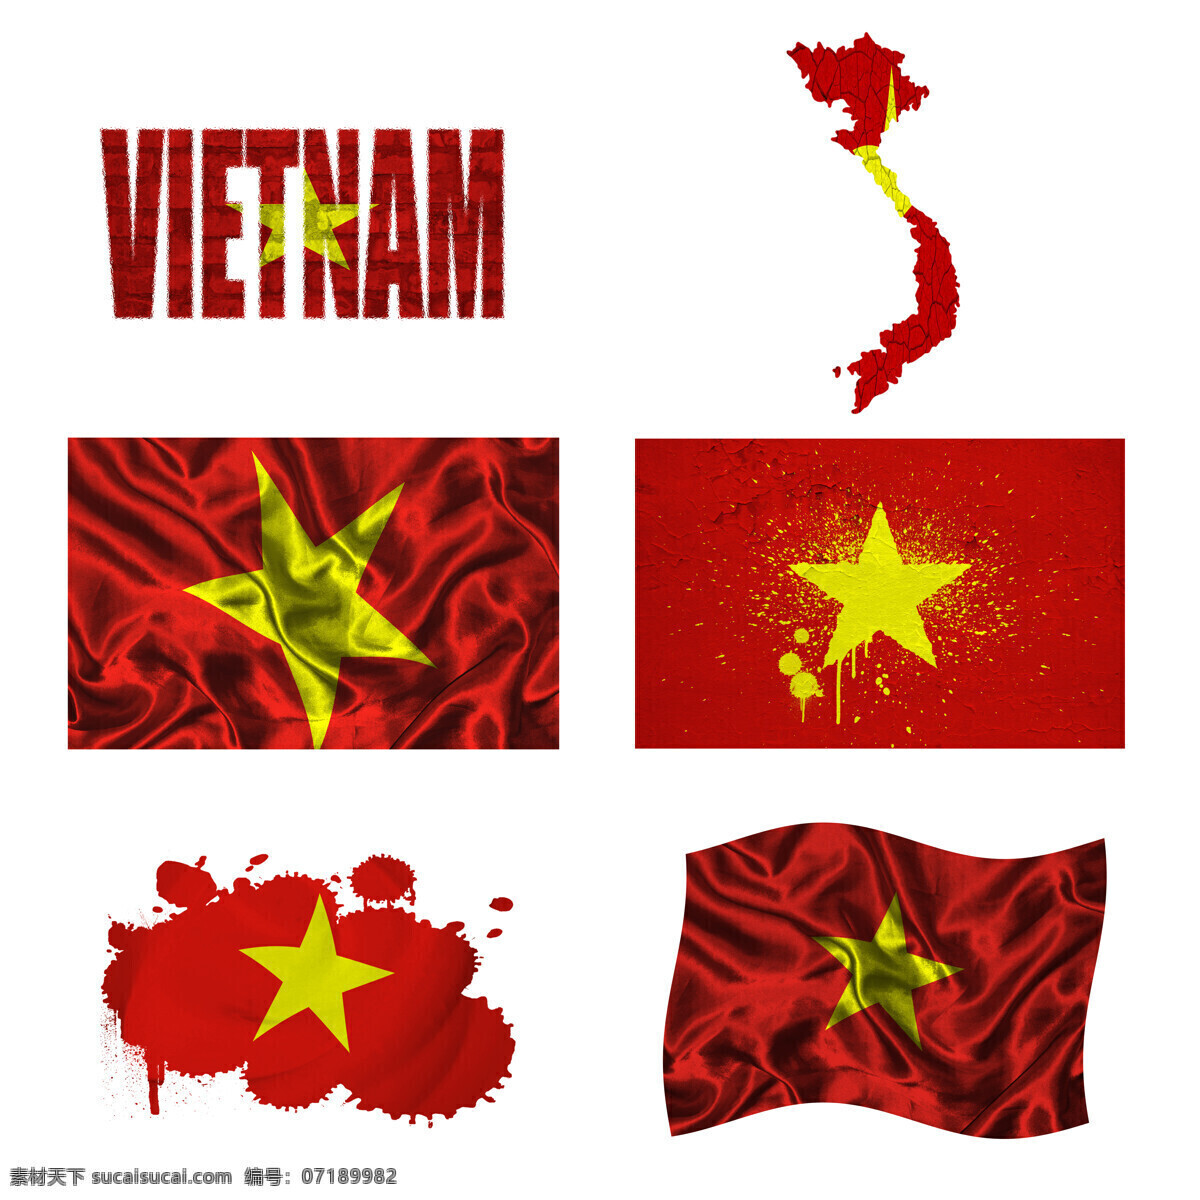 越南国旗地图 越南国旗 地图 旗帜 国旗图案 其他类别 生活百科 白色